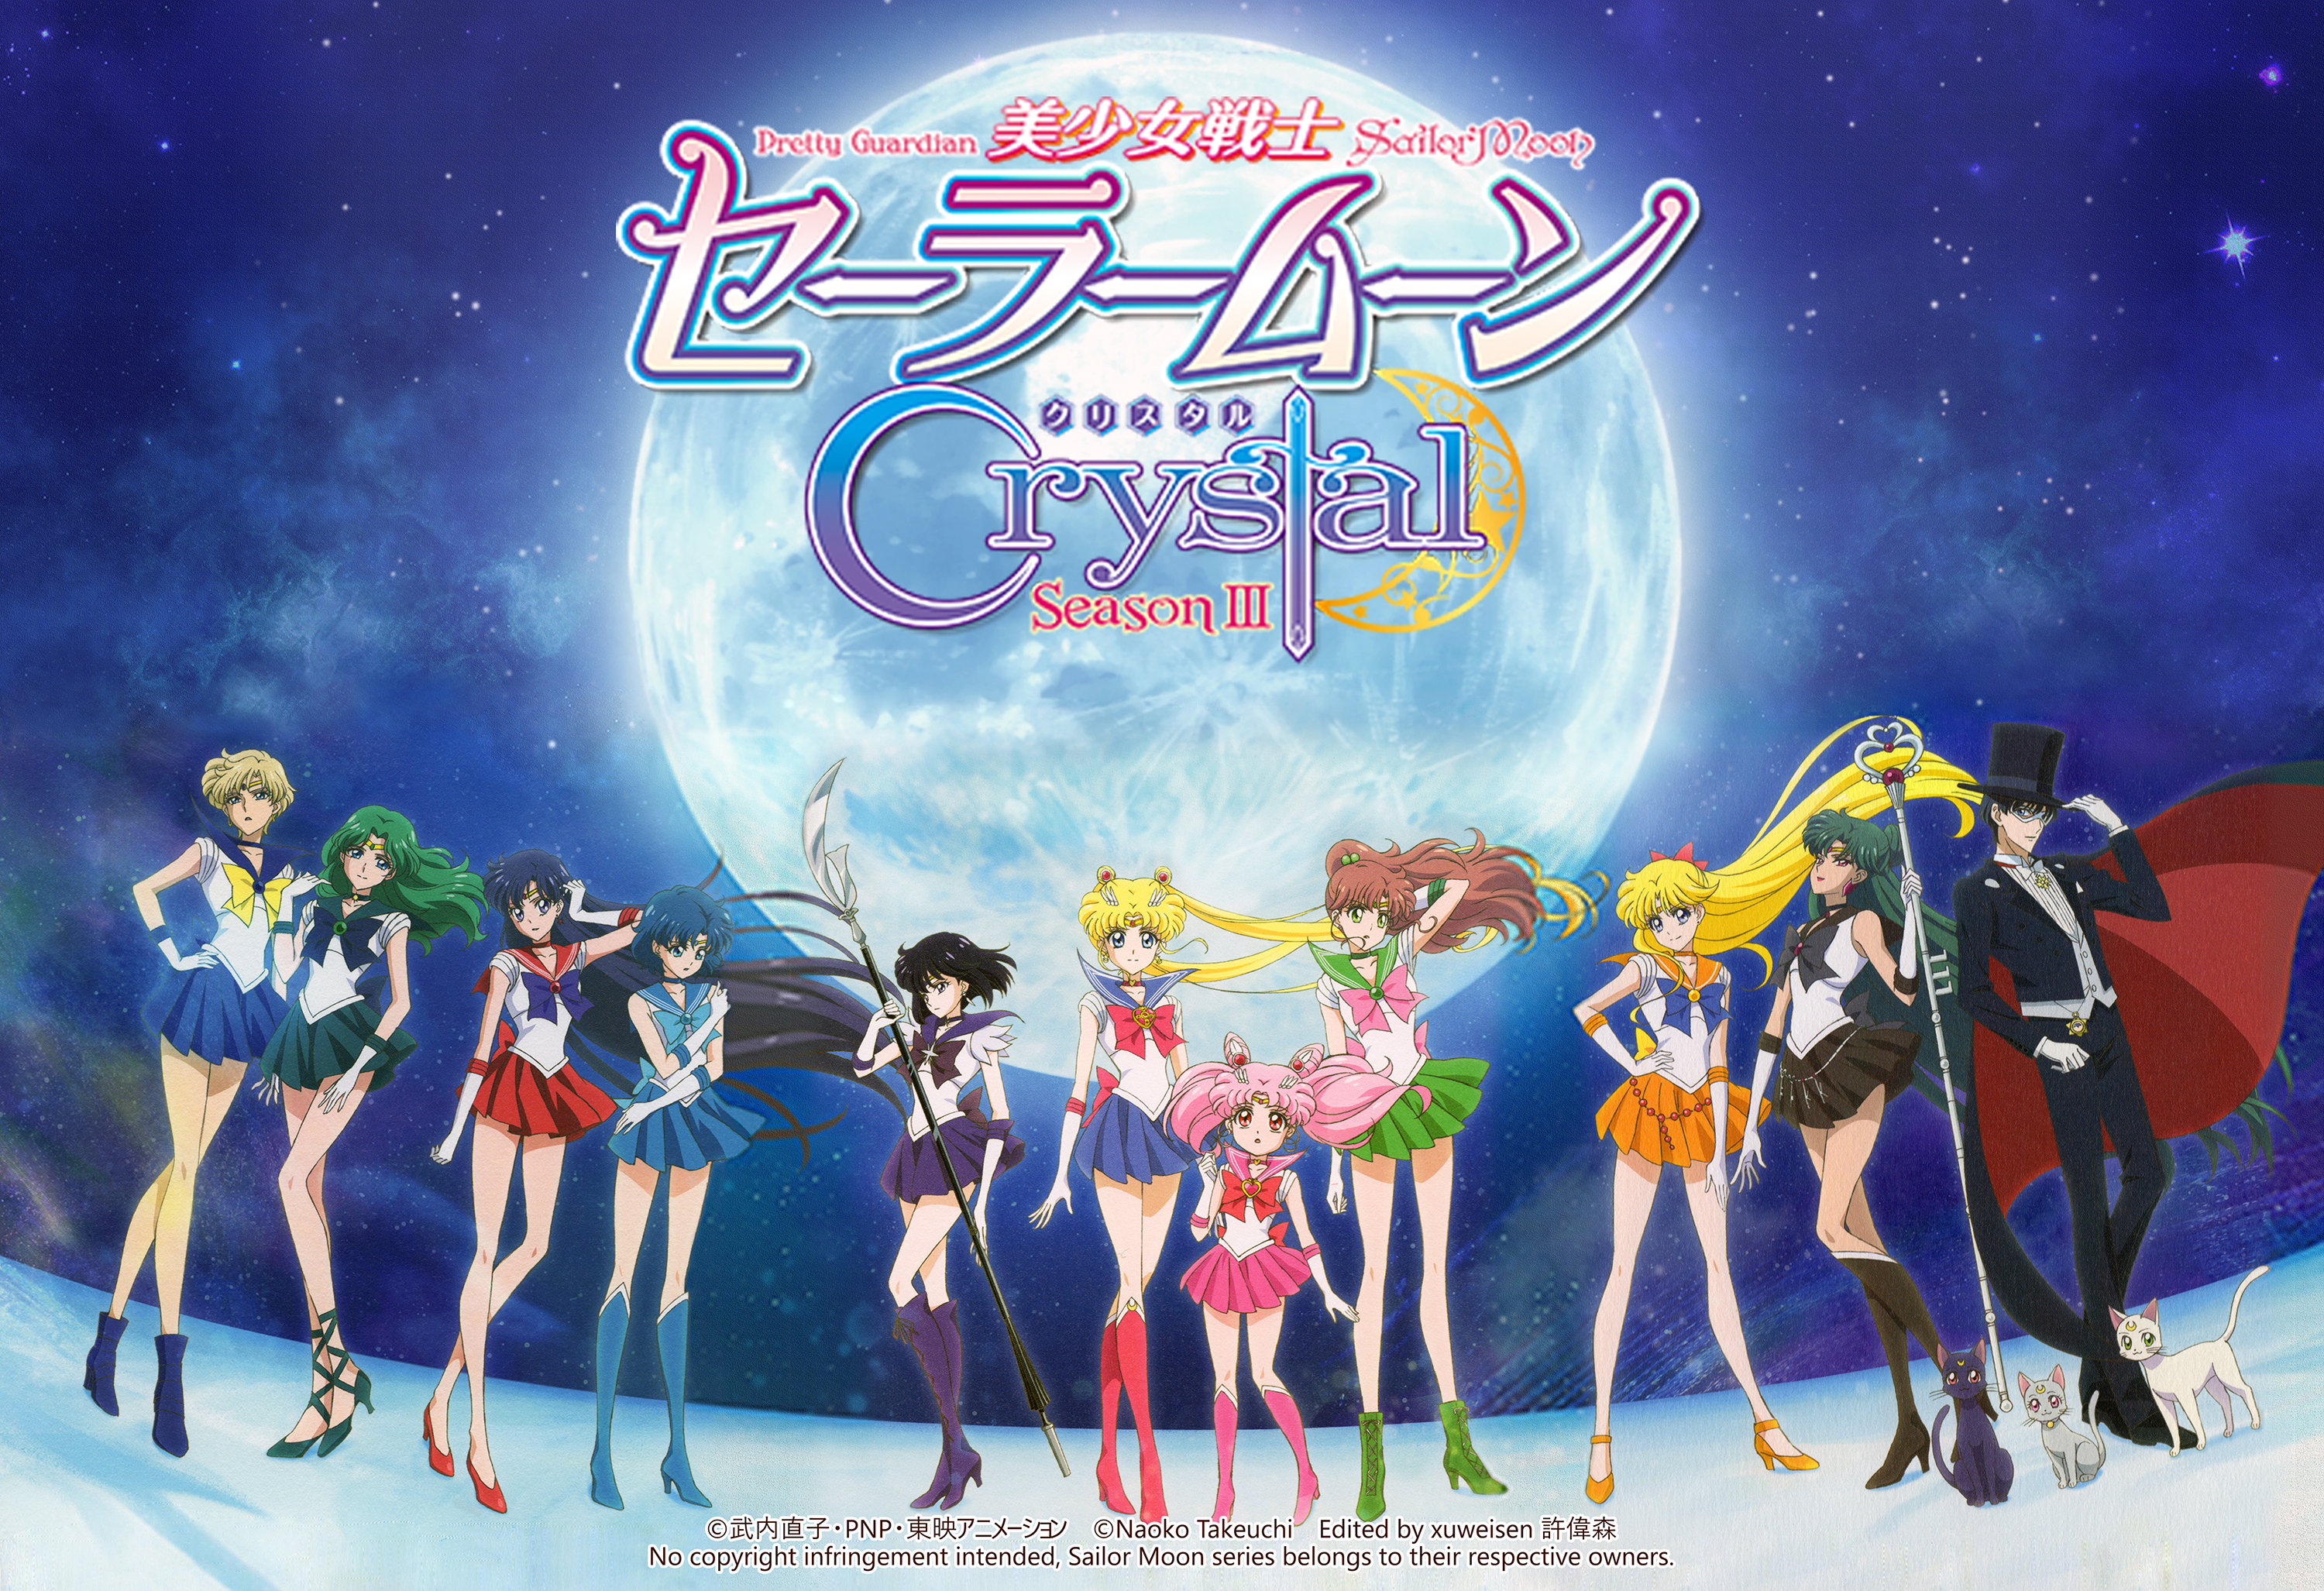 Outer Senshi with Sailor moon - Sailor Moon Crystal - Season 3